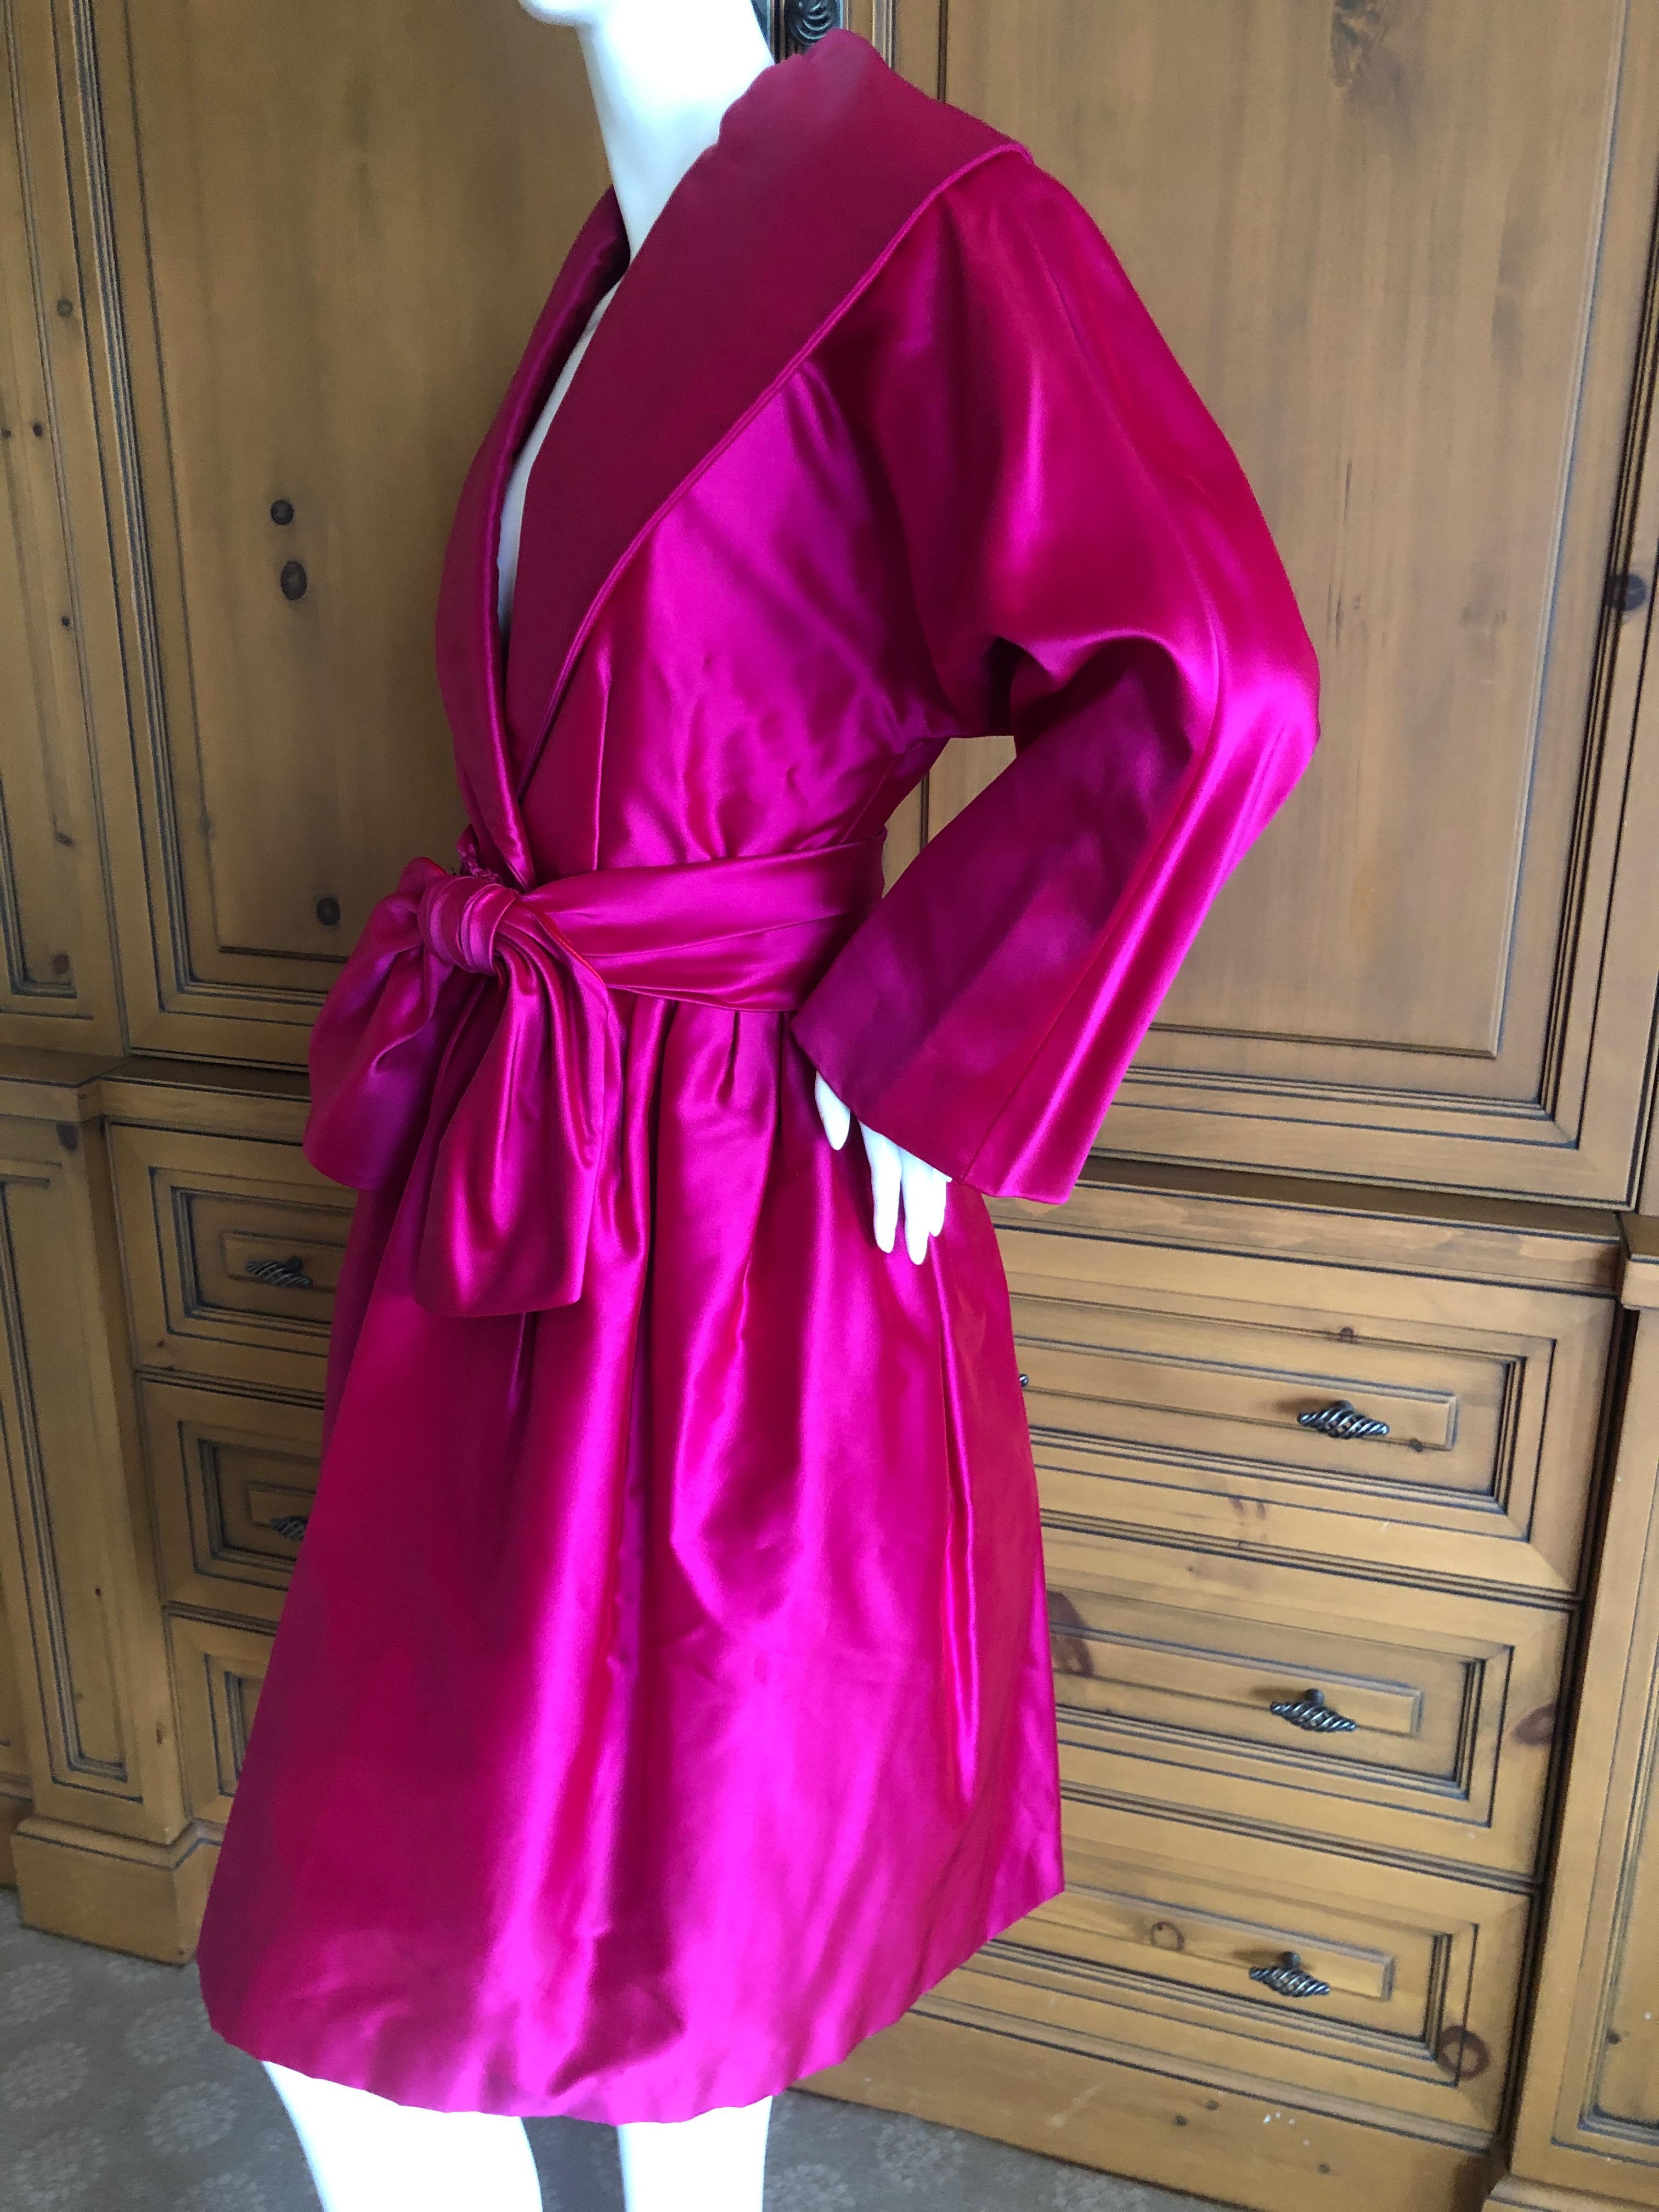 Women's Carolyne Roehm Bergdorf Goodman Fuchsia Silk Faille Opera Coat or Dress w Belt For Sale